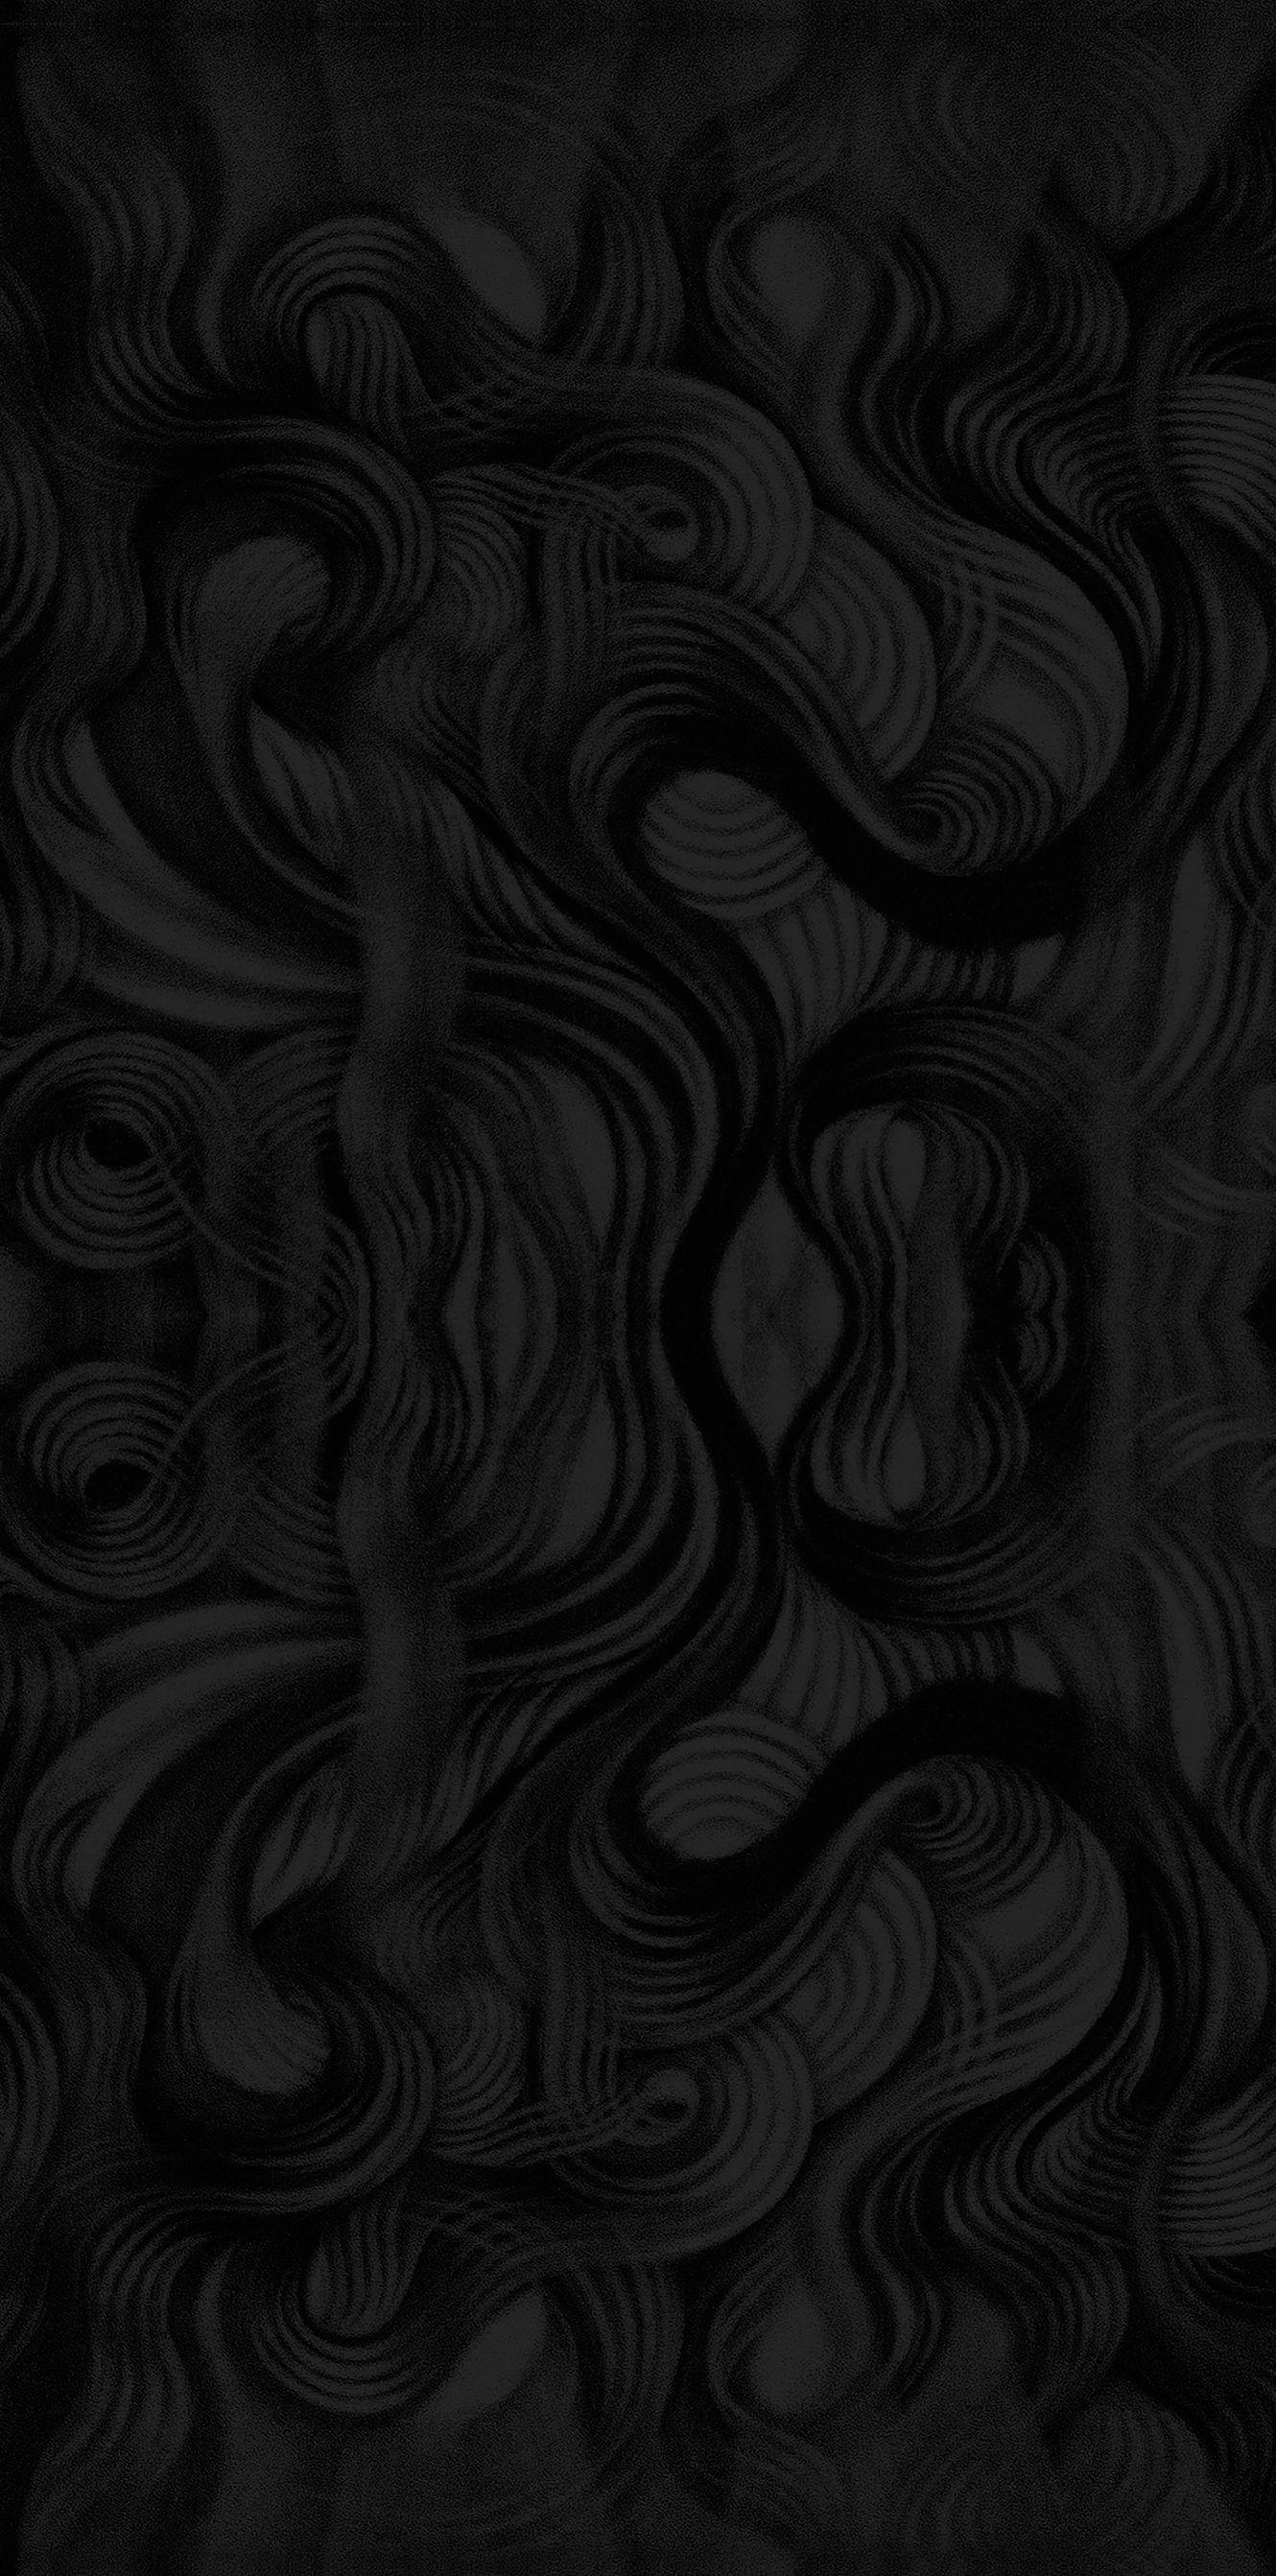 Steam WorkshopBlack and white Gojira wallpaper 1440p